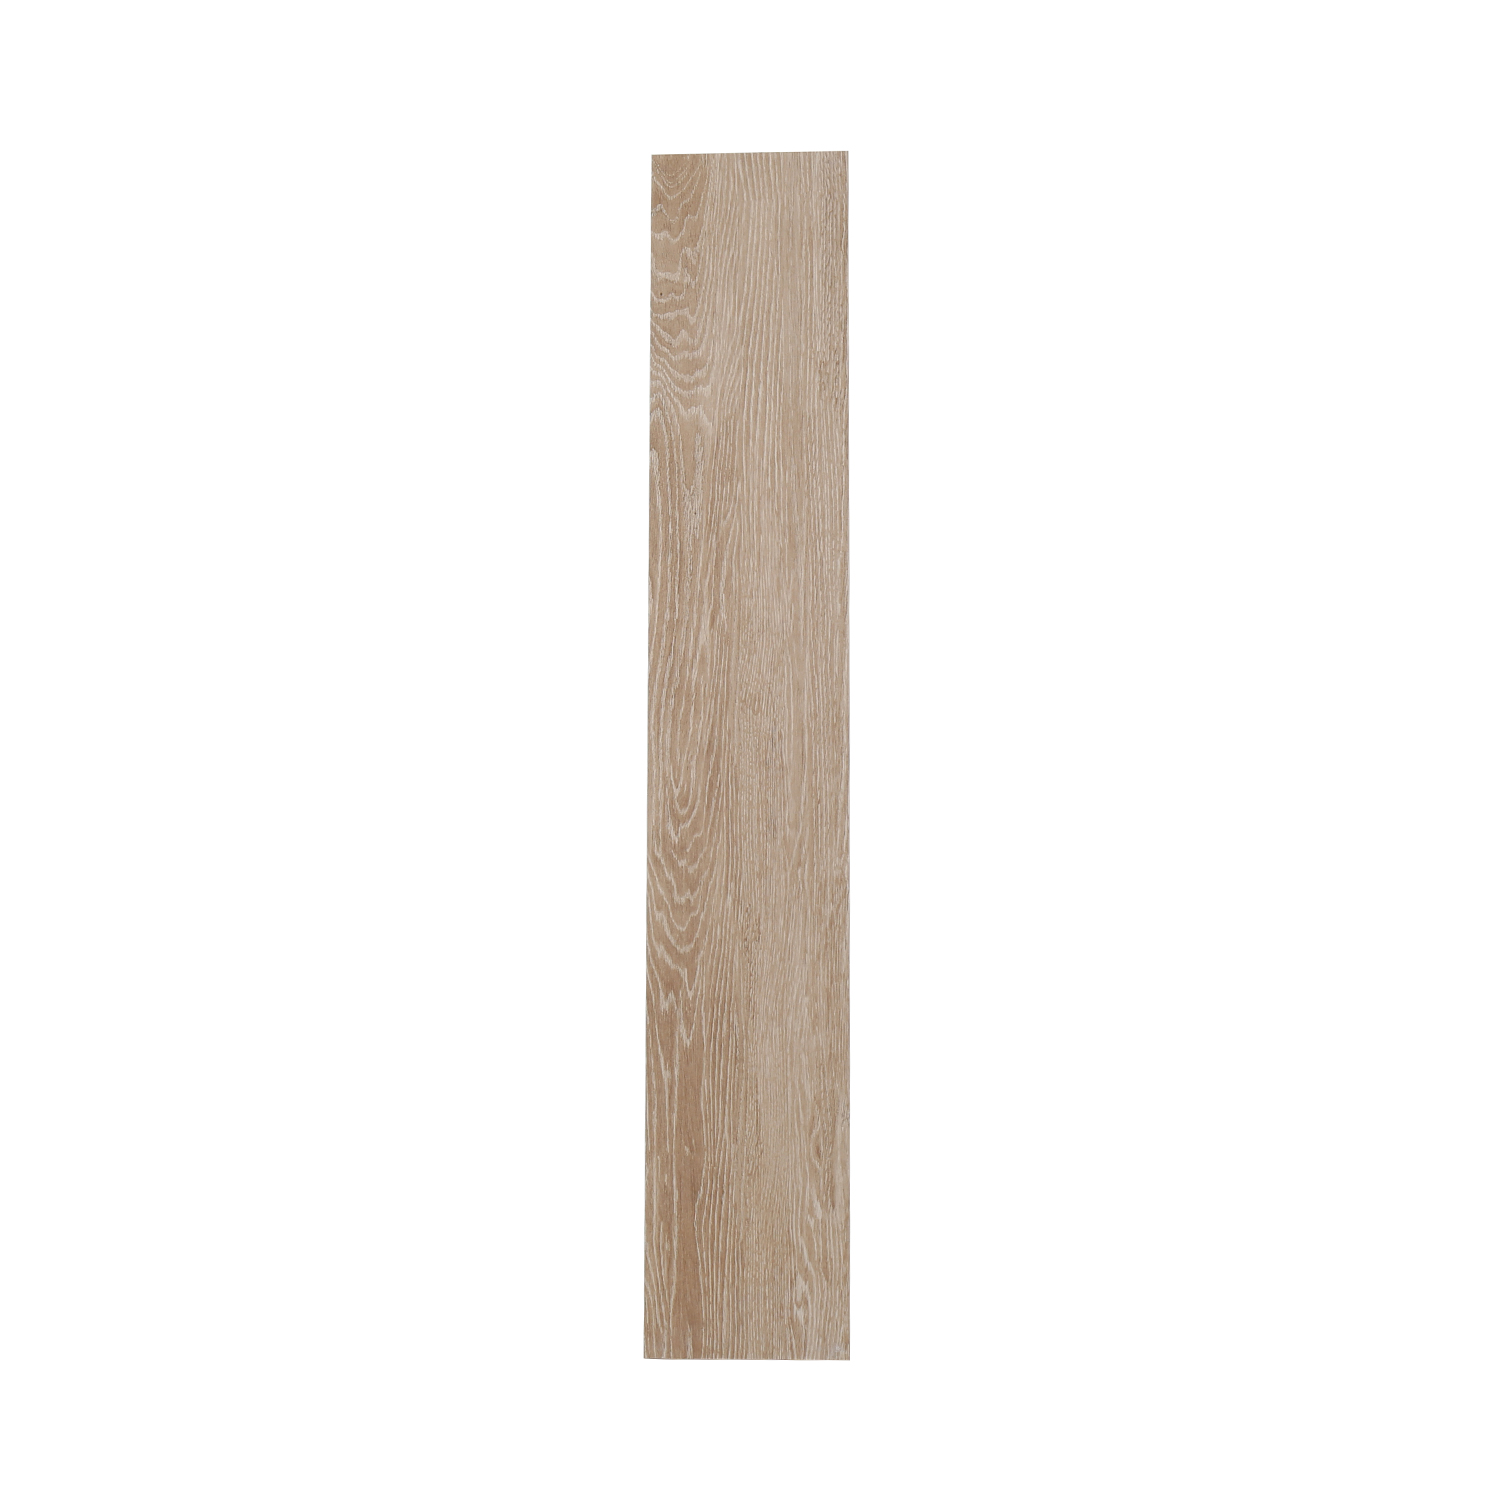 3D Inkjet Like Natural wood looks wooden floor tiles-AJ915052M-150x900